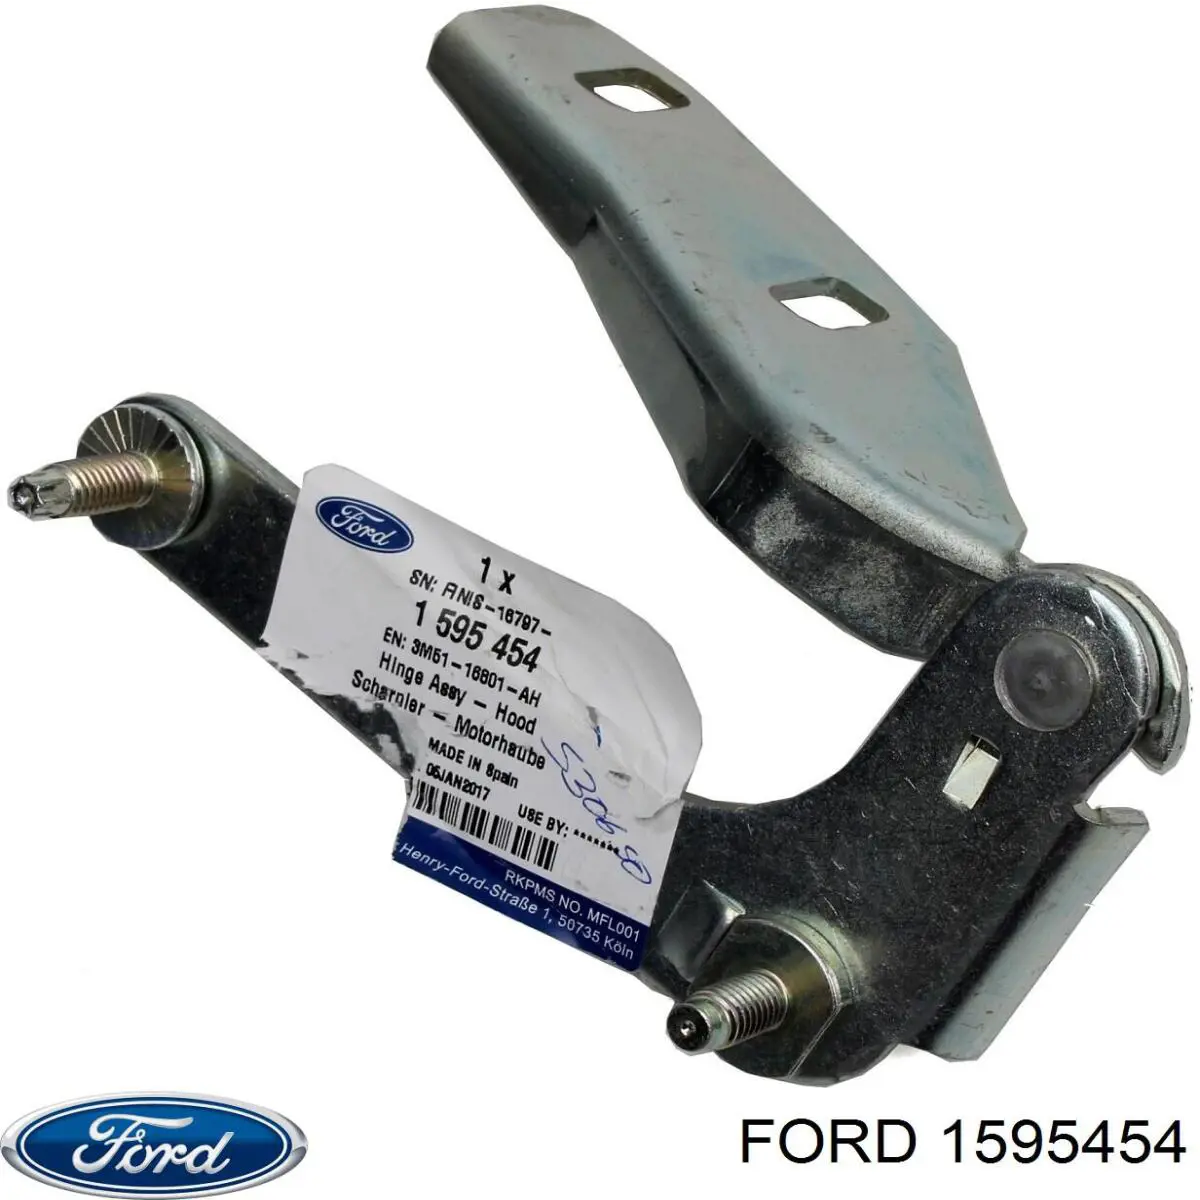 3M5116801-AH Ford петля капота левая